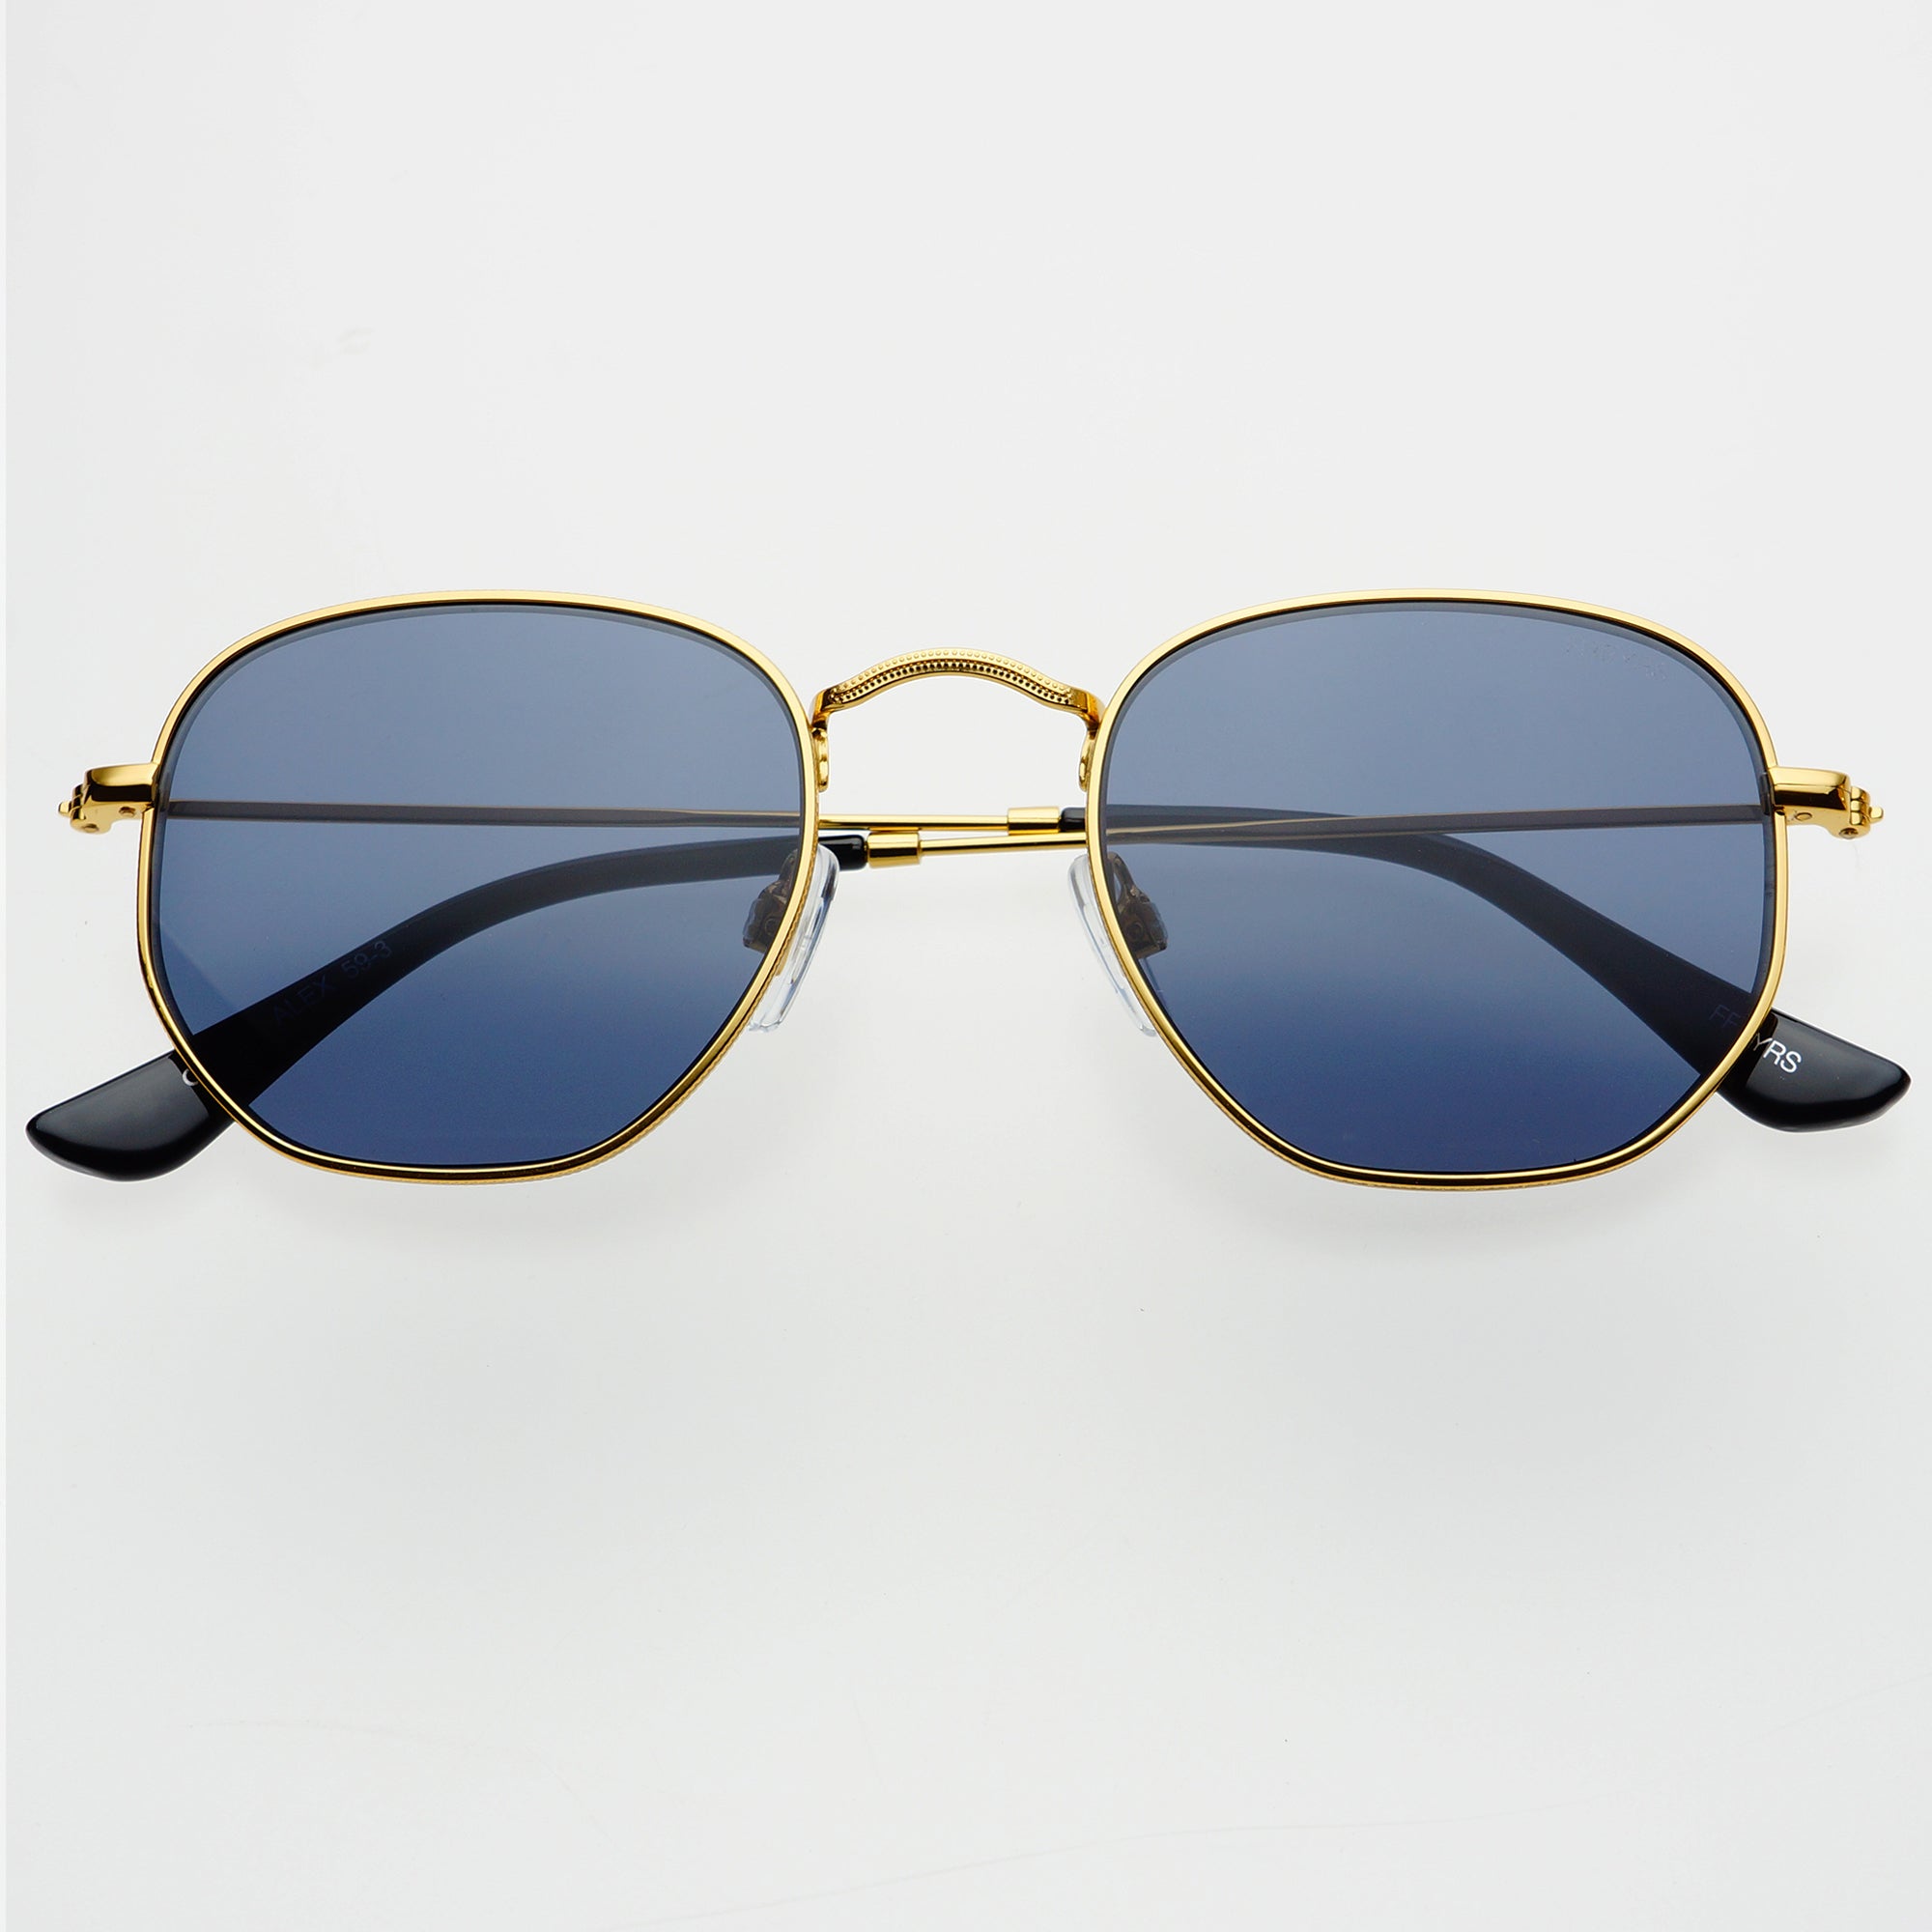 100% UV Protected Luxury Hexagonal Sunglasses For Men & Women